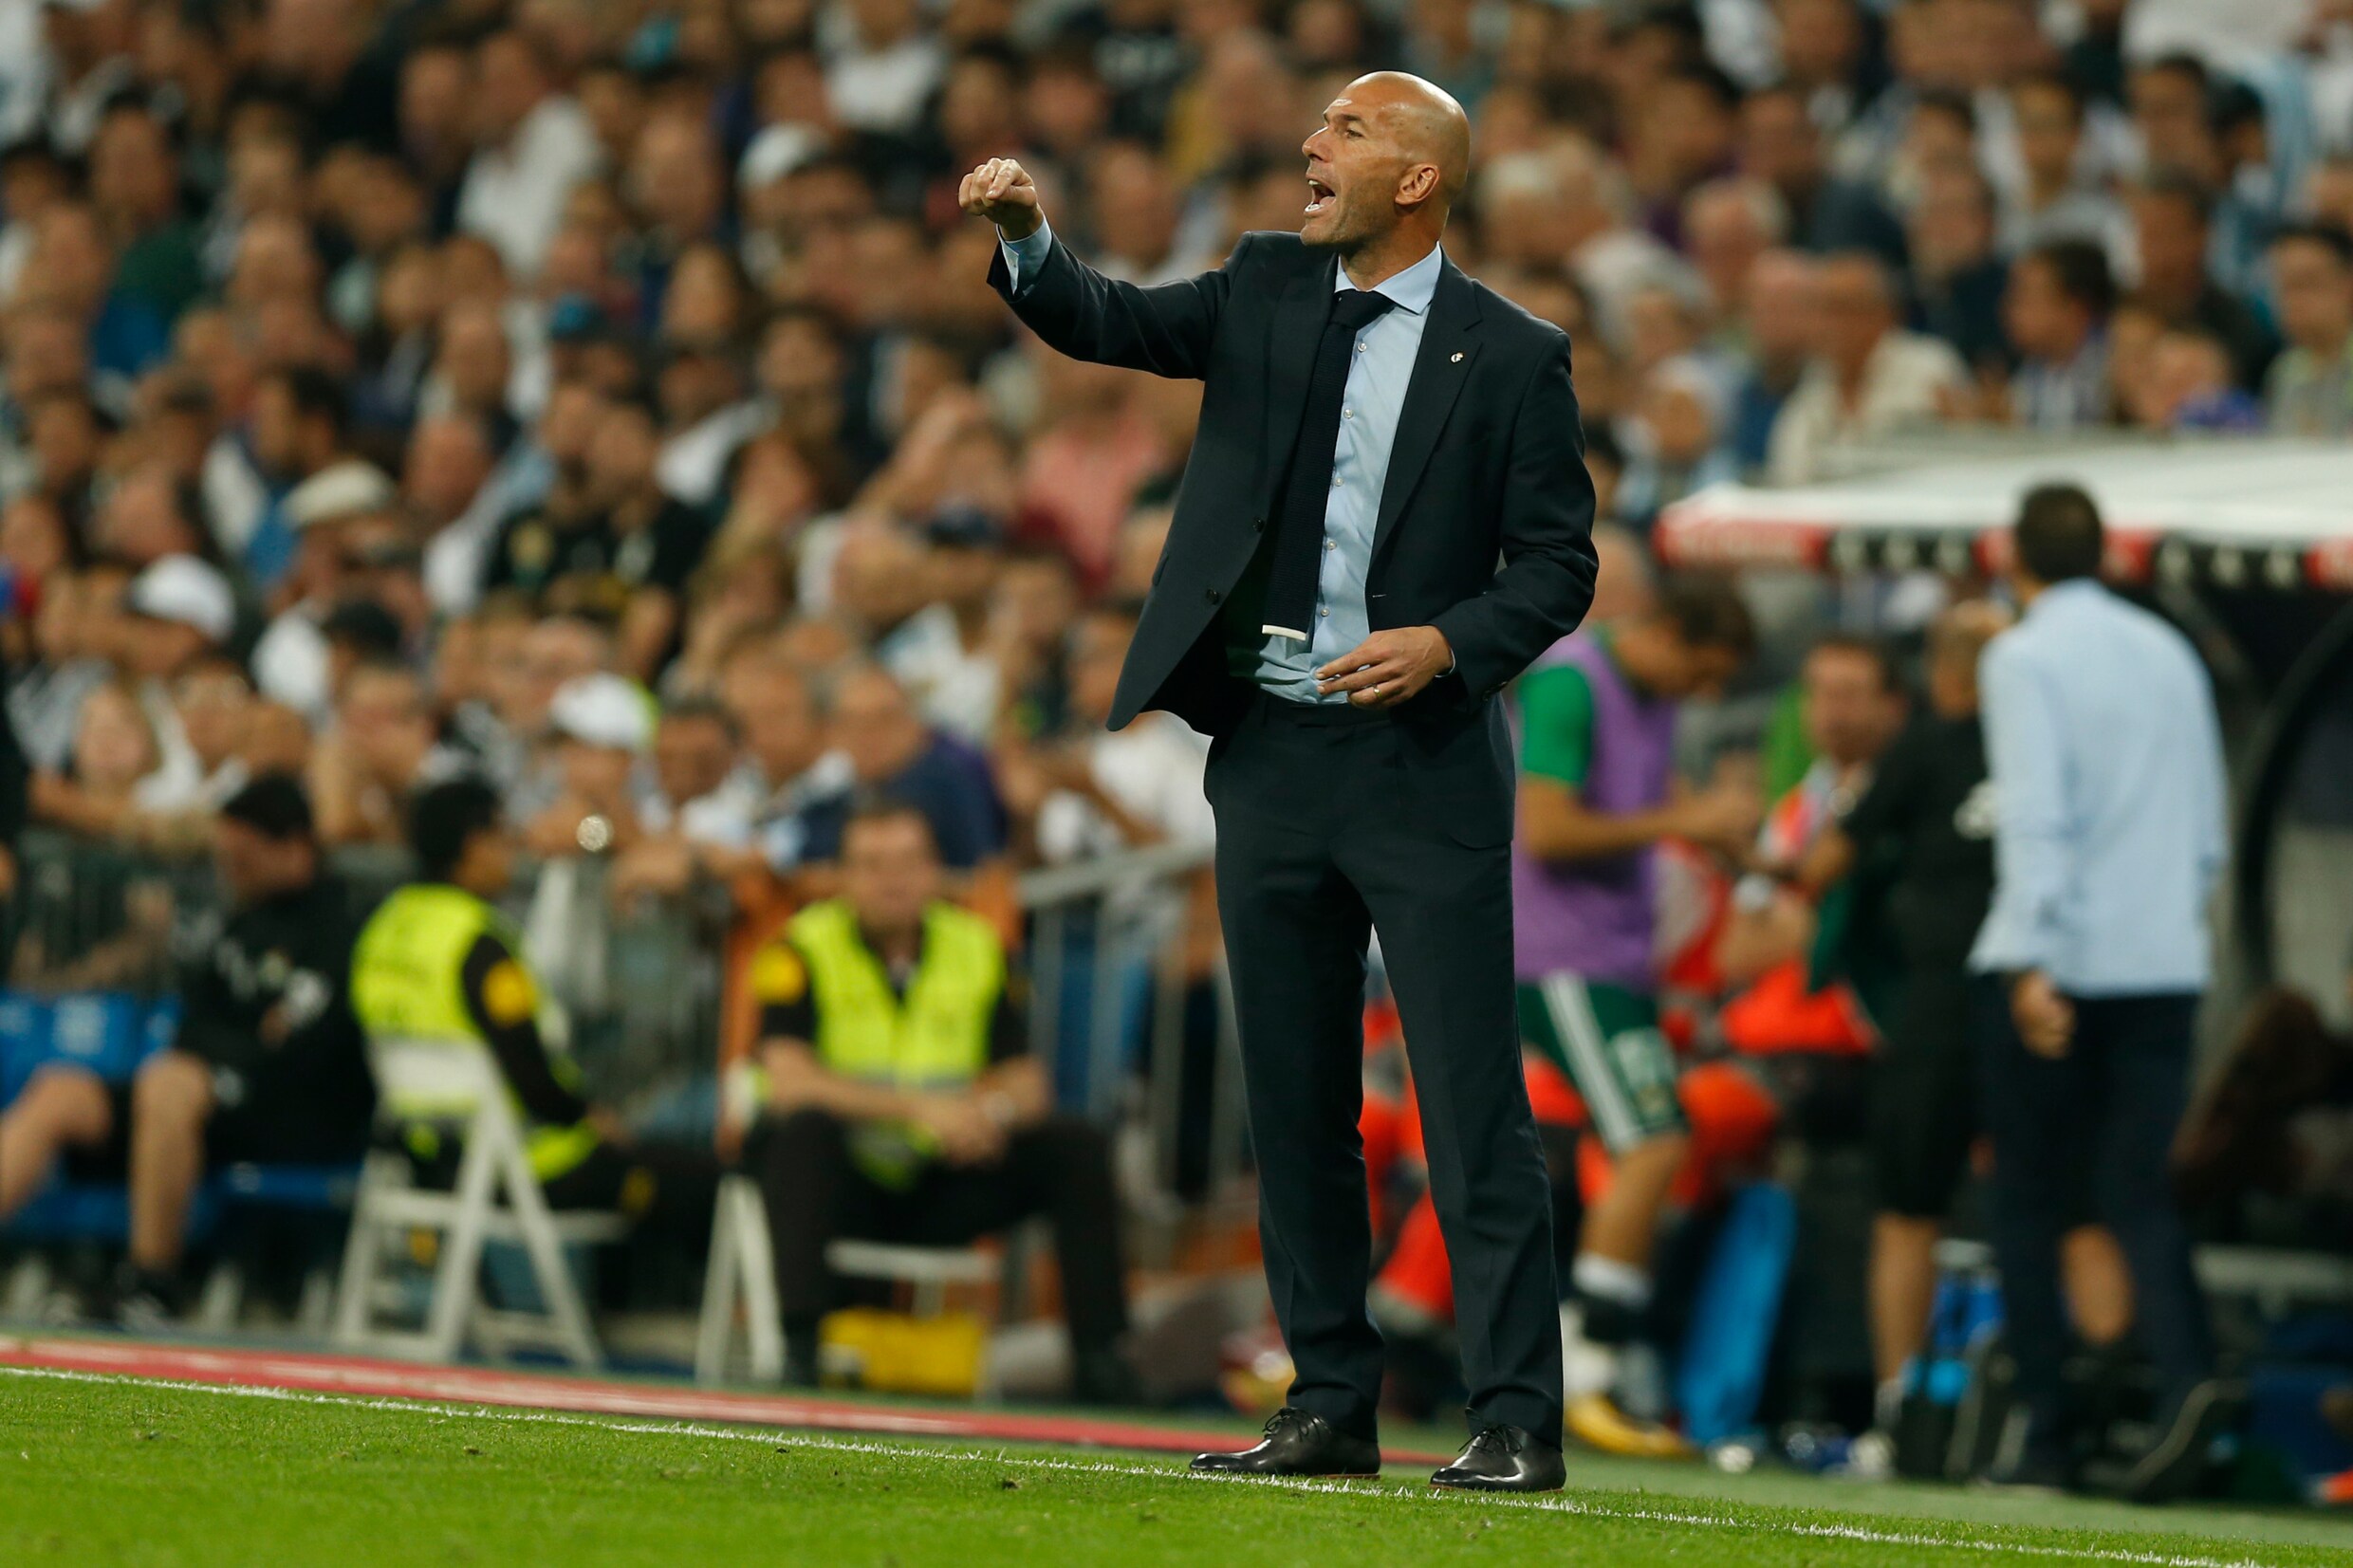 Zidane predikt rust na slechtste start Real sinds 2012-2013 - "Het valt niet mee om met Messi te spelen"